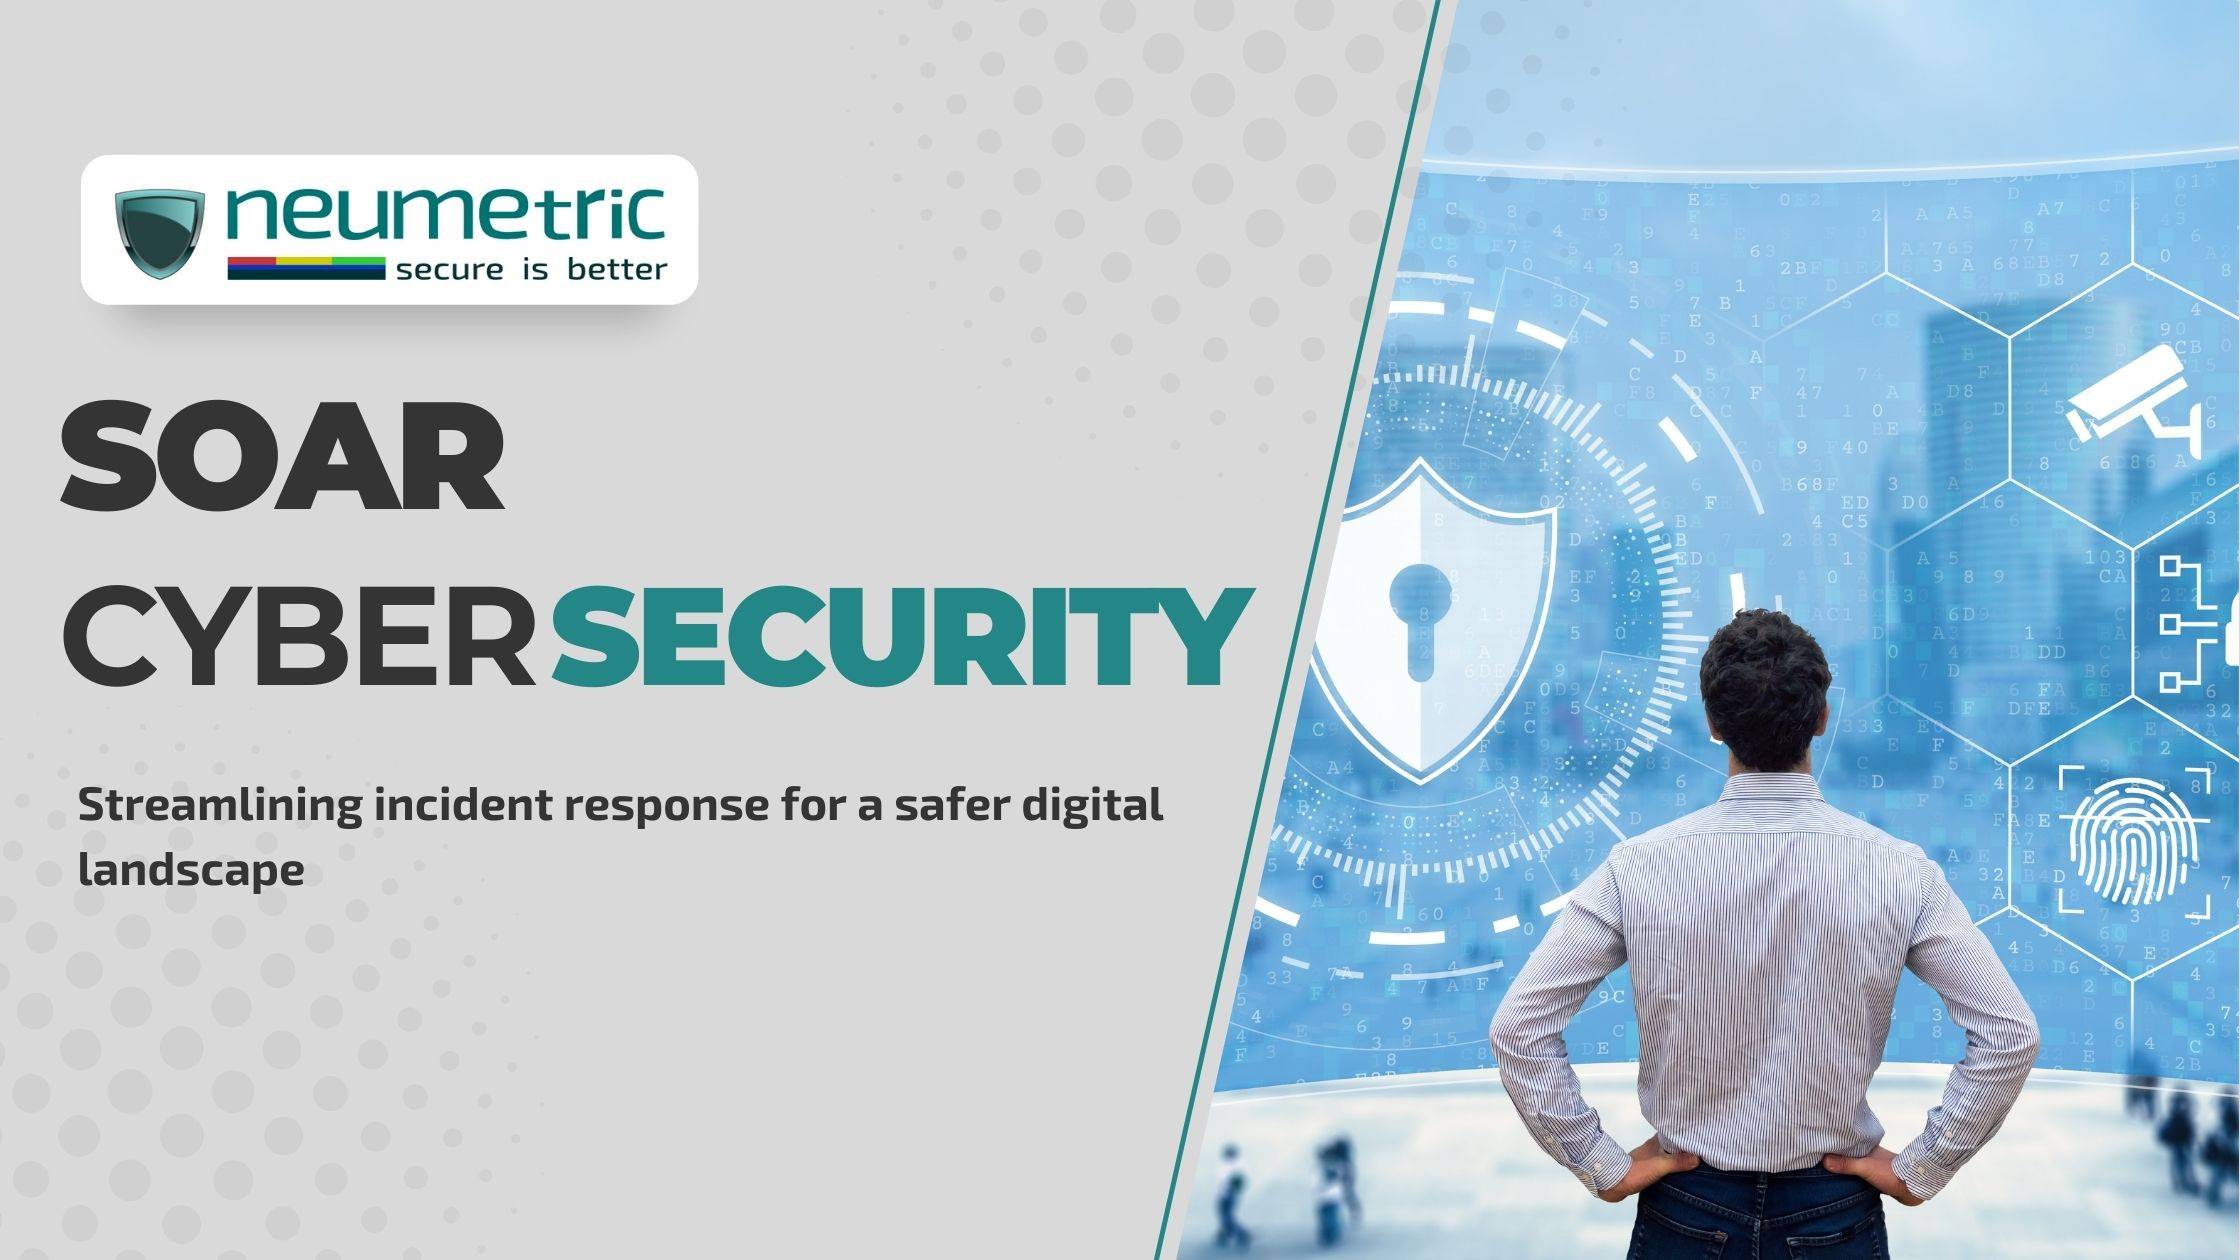 SOAR cyber security: Streamlining incident response for a safer digital landscape